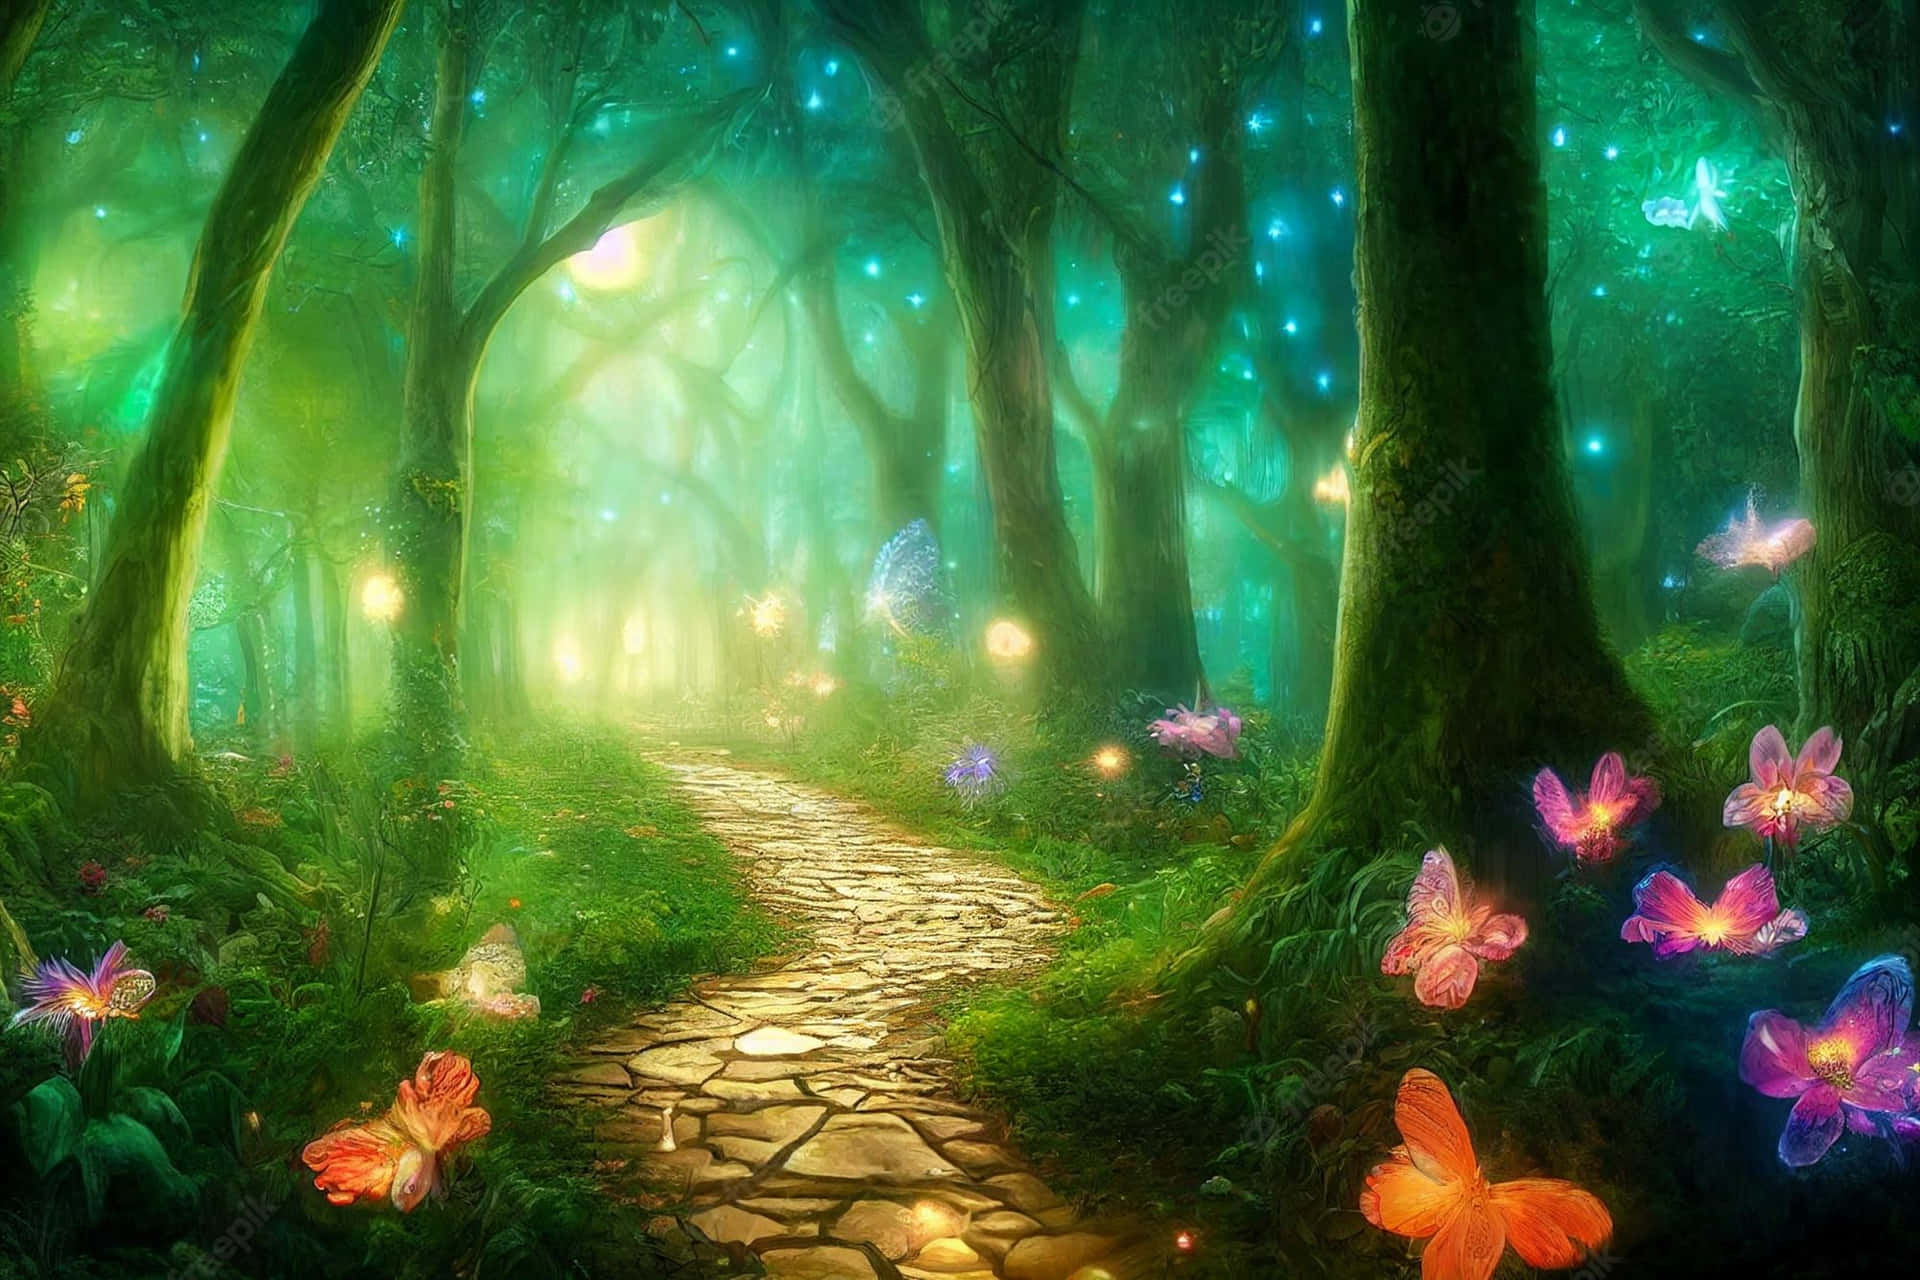 Entreem Um Mundo De Magia E Maravilhe-se Na Bela Floresta Mágica. Papel de Parede